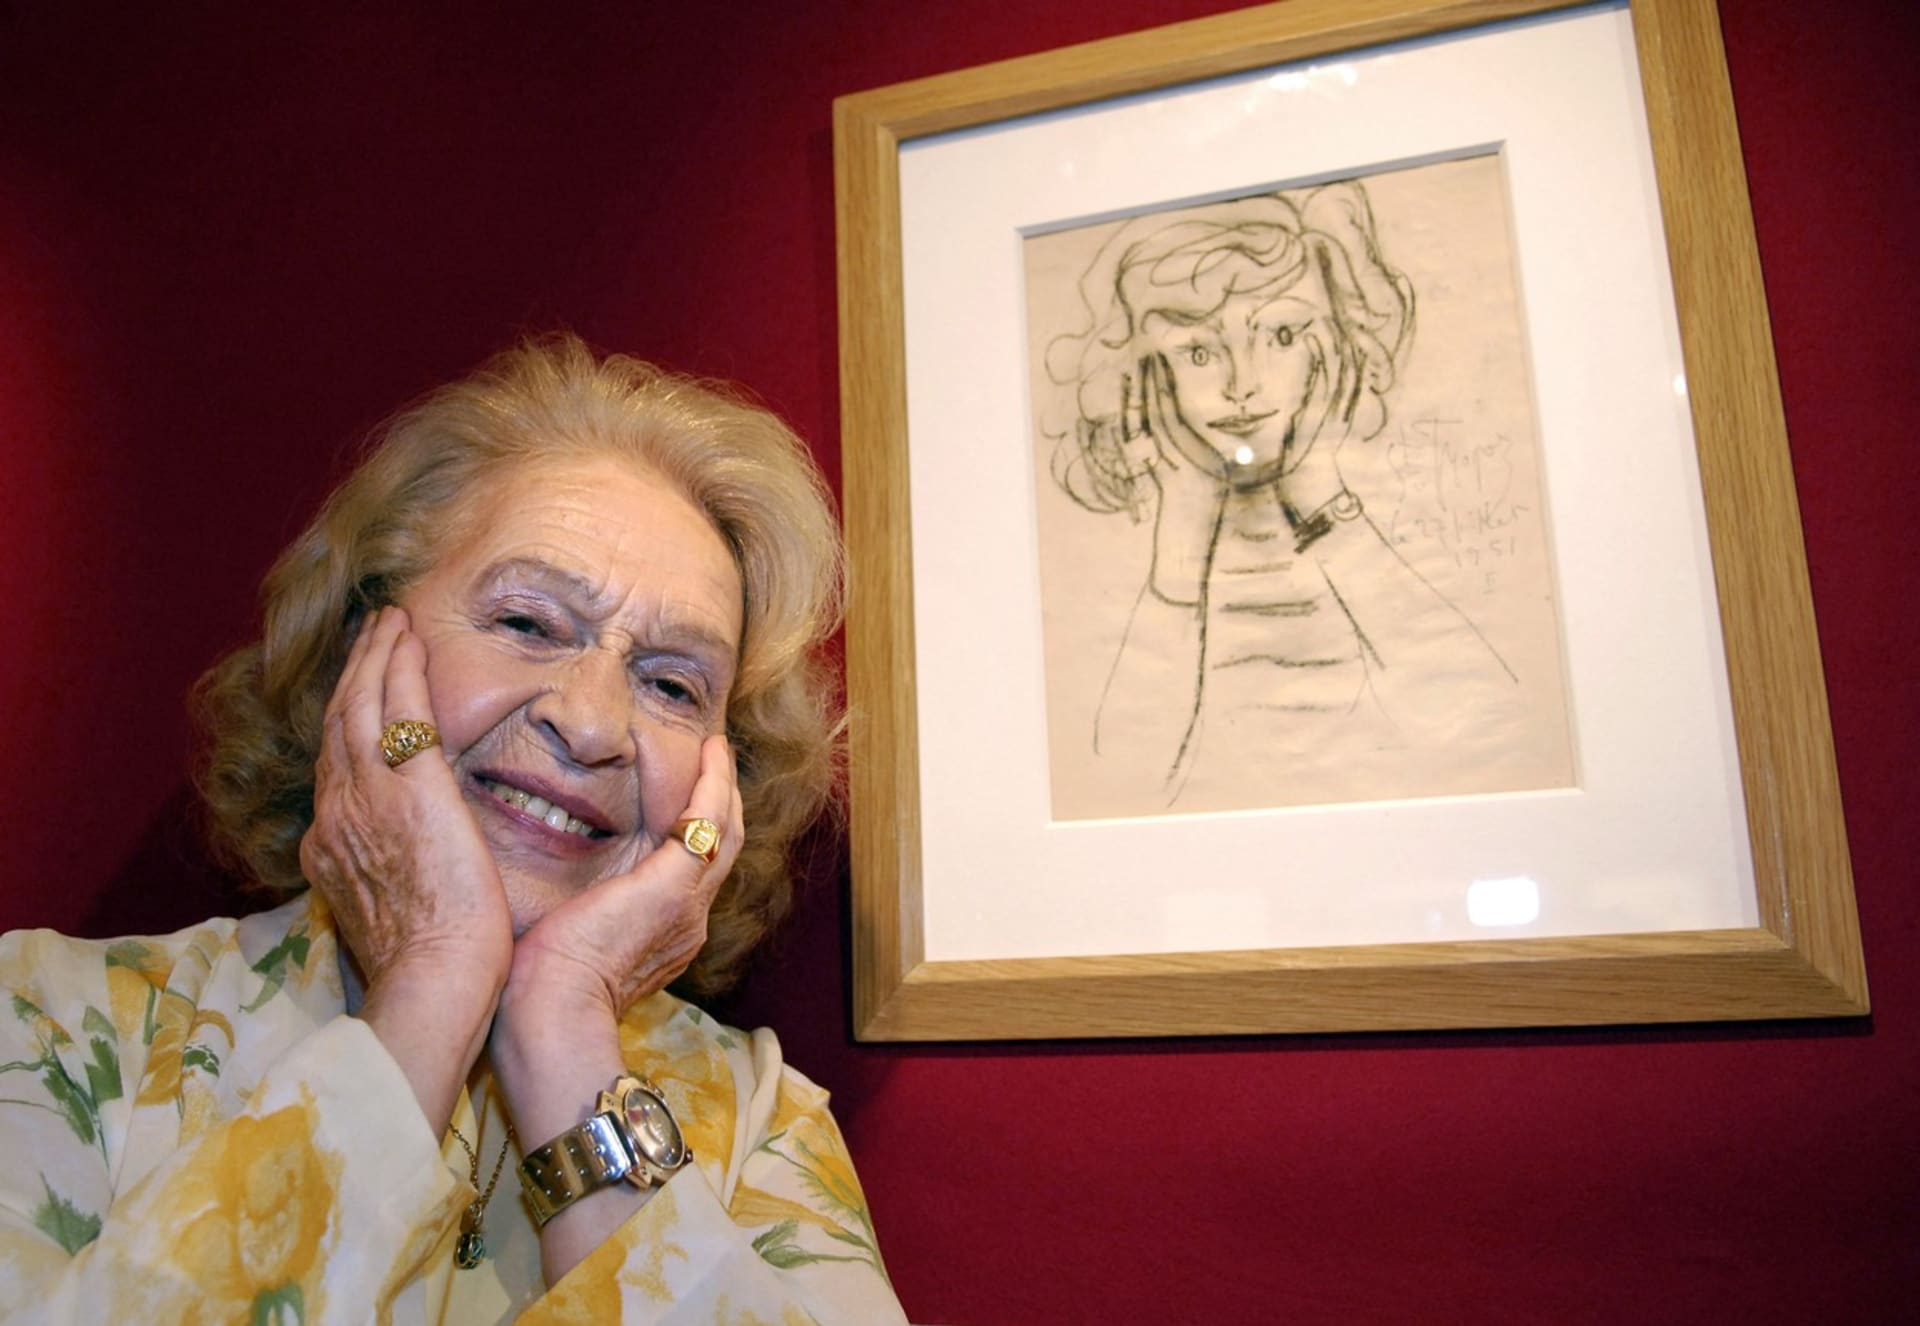 Genevieve Laporteová na jednom z Picassových skiců. Kresby vznikly během jejich dvouletého románku.